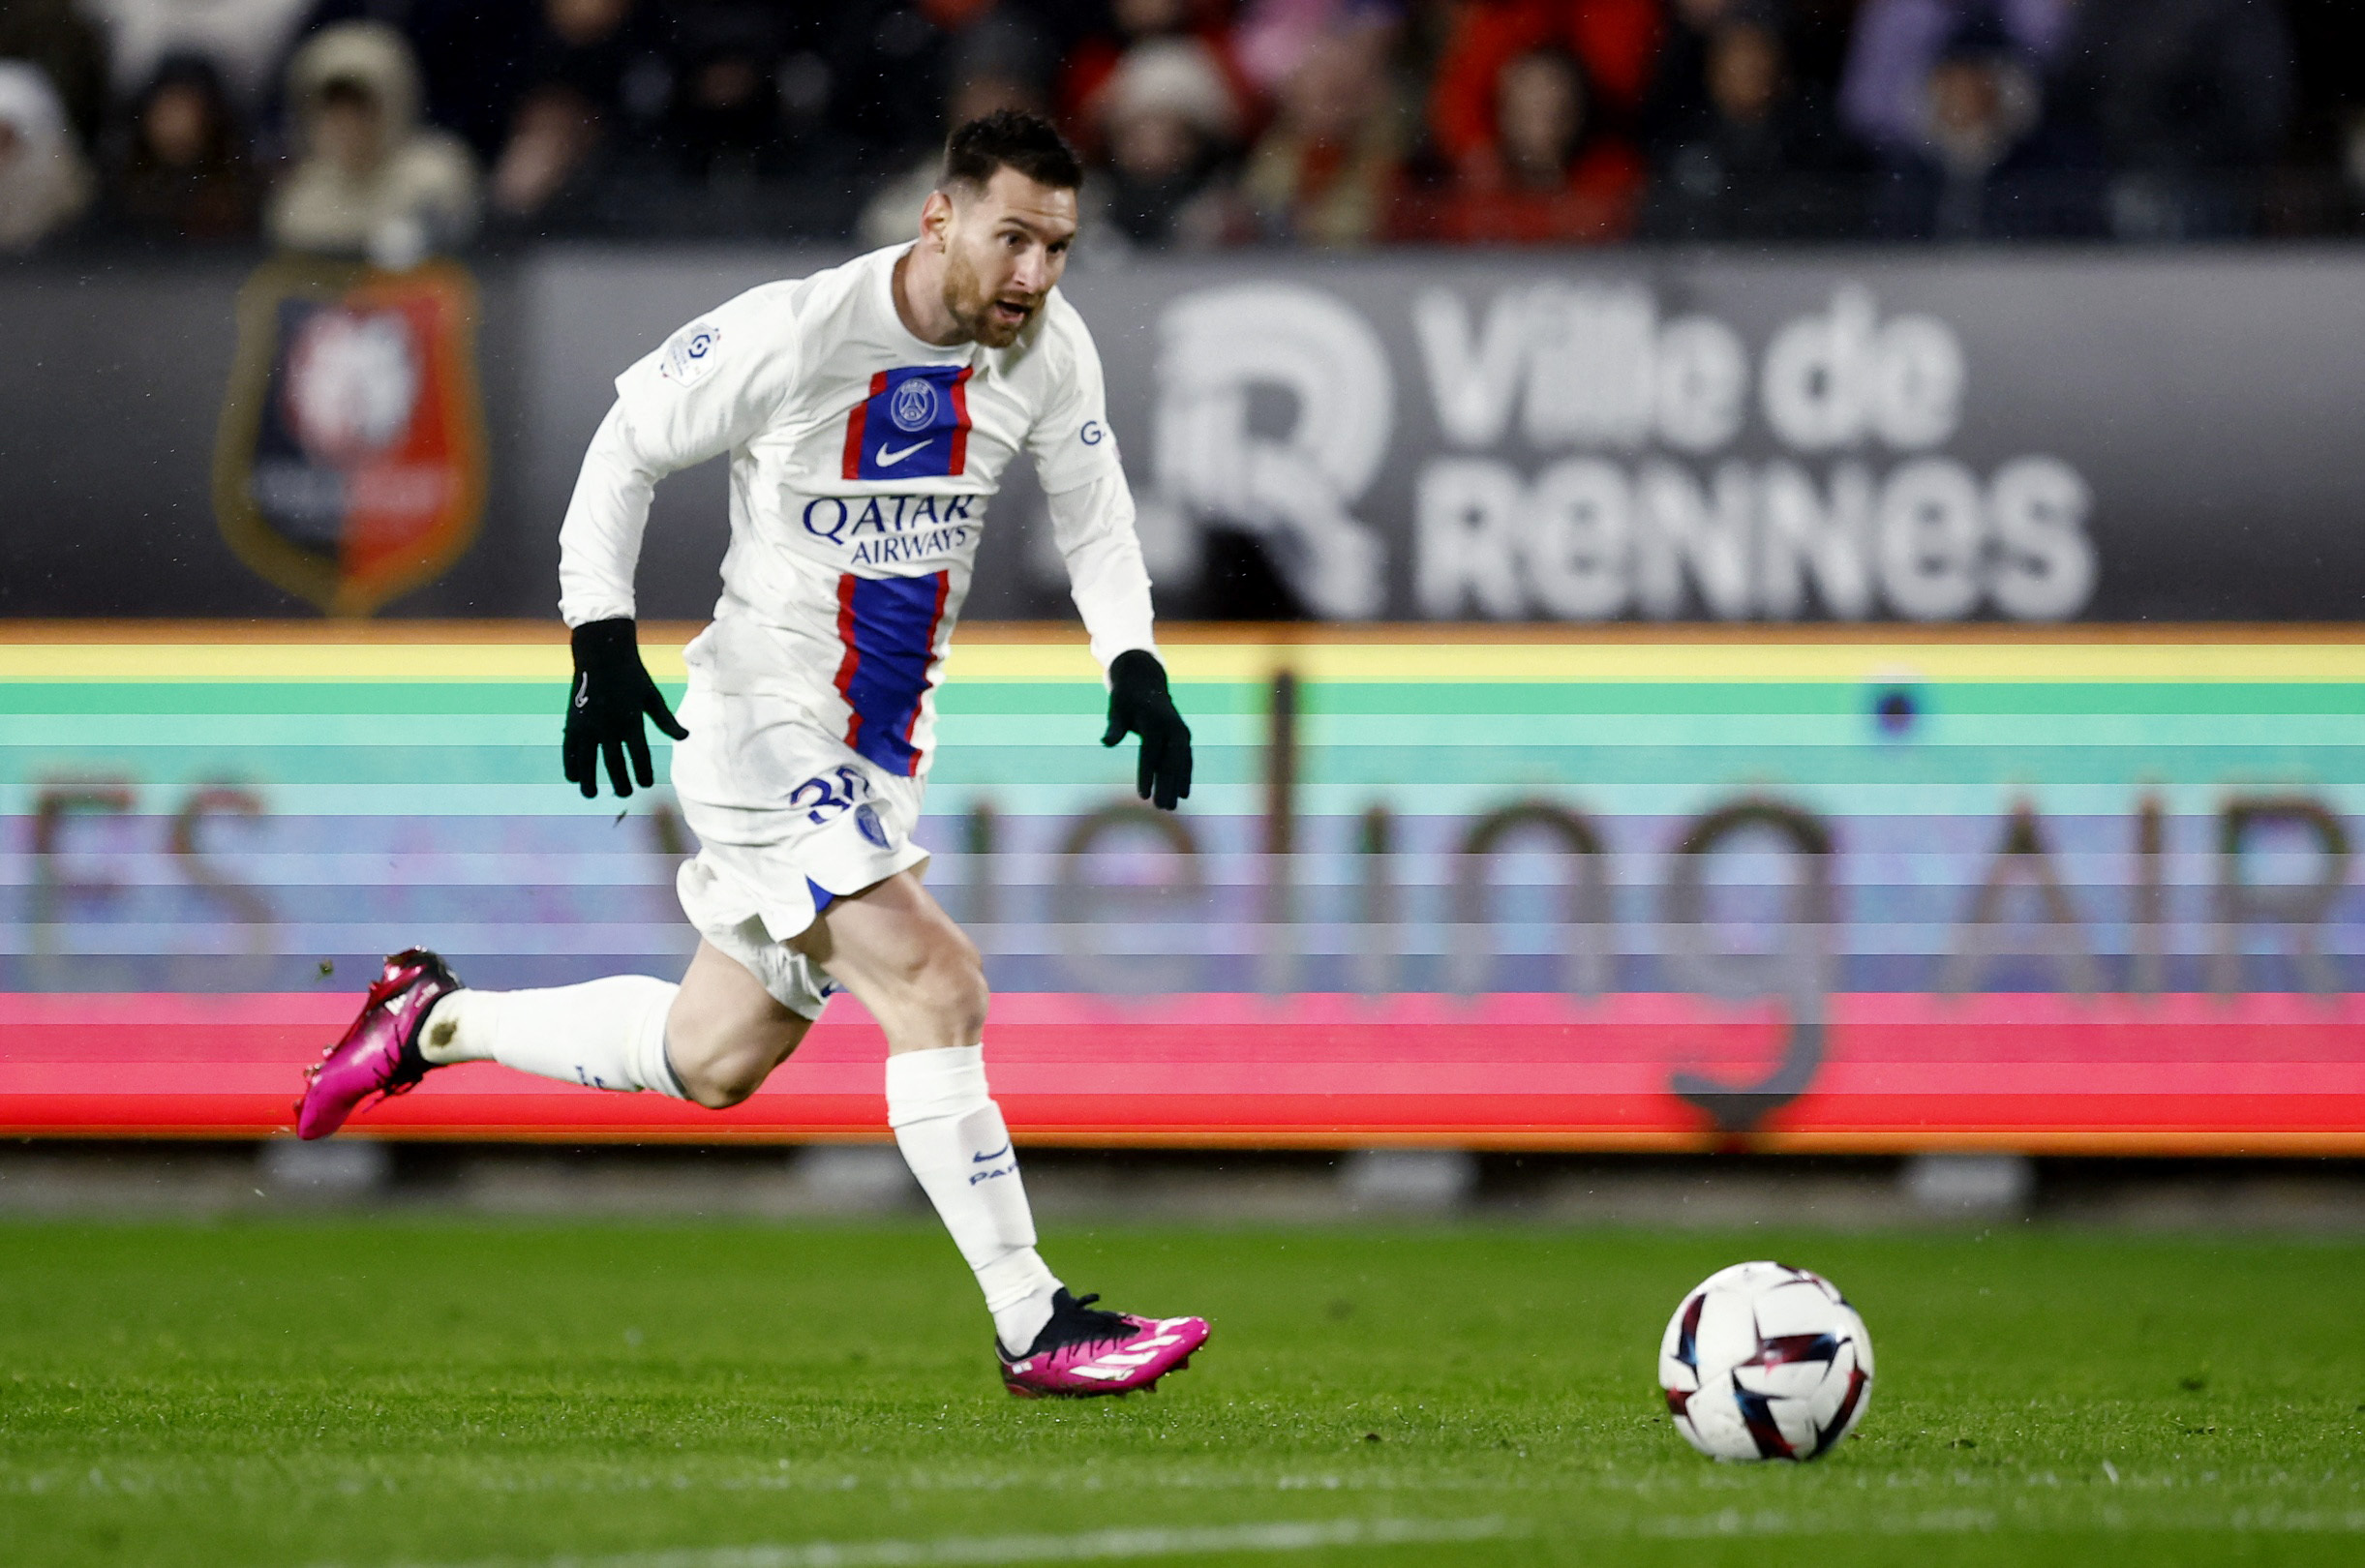 Con presencia de Lionel Messi, el PSG viene de perder ante Rennes en su última presentación en la Ligue 1 (REUTERS/Stephane Mahe)